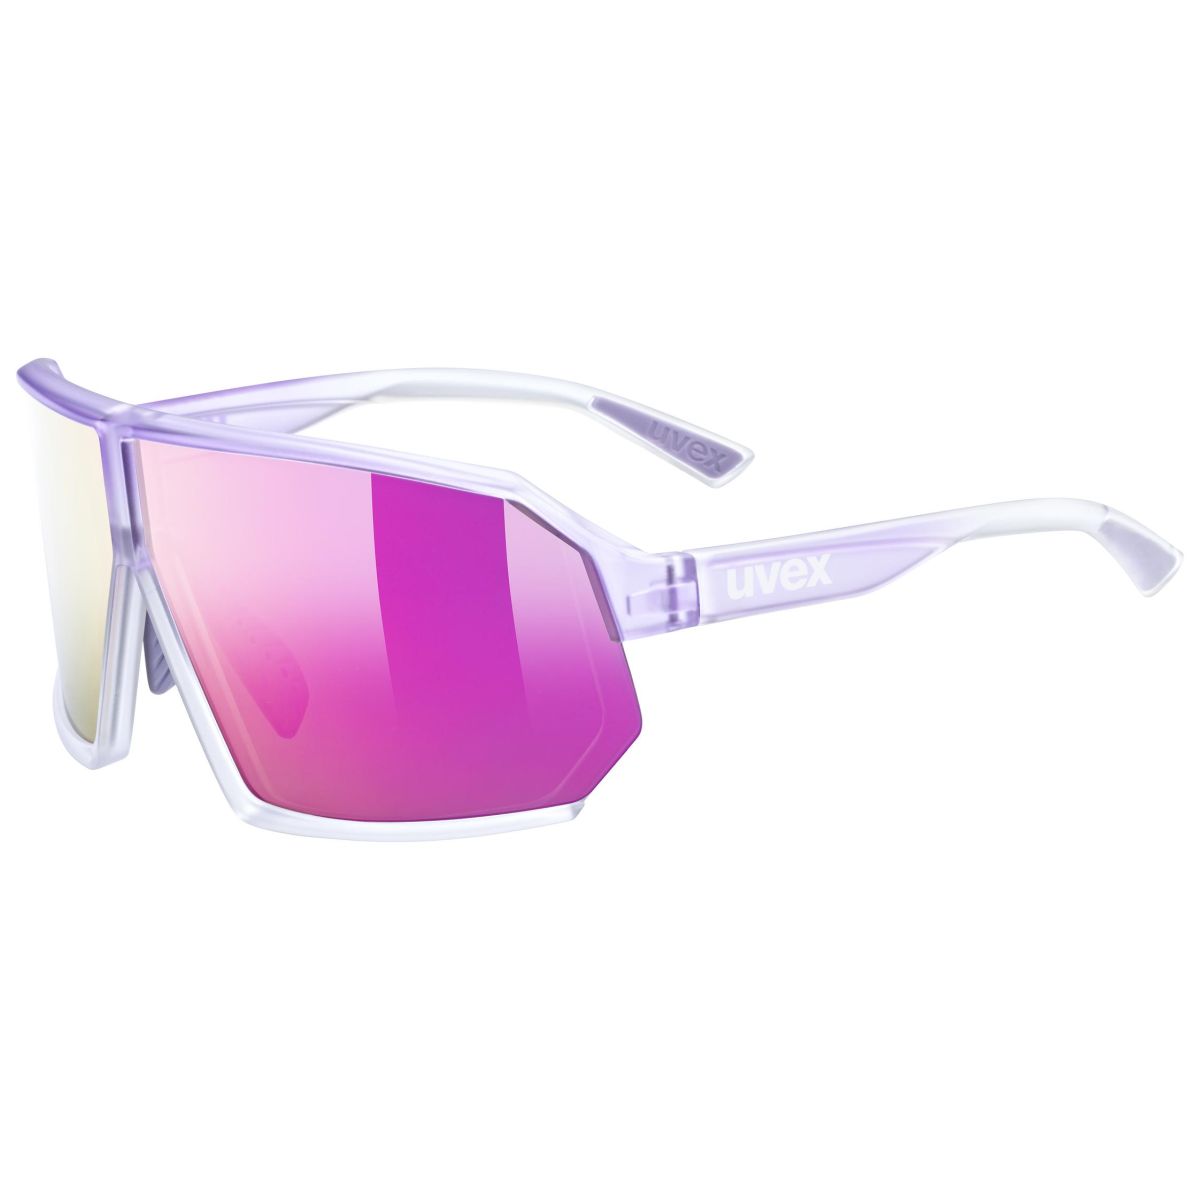 Produktbild von Uvex sportstyle 237 Brille - purple fade/mirror purple